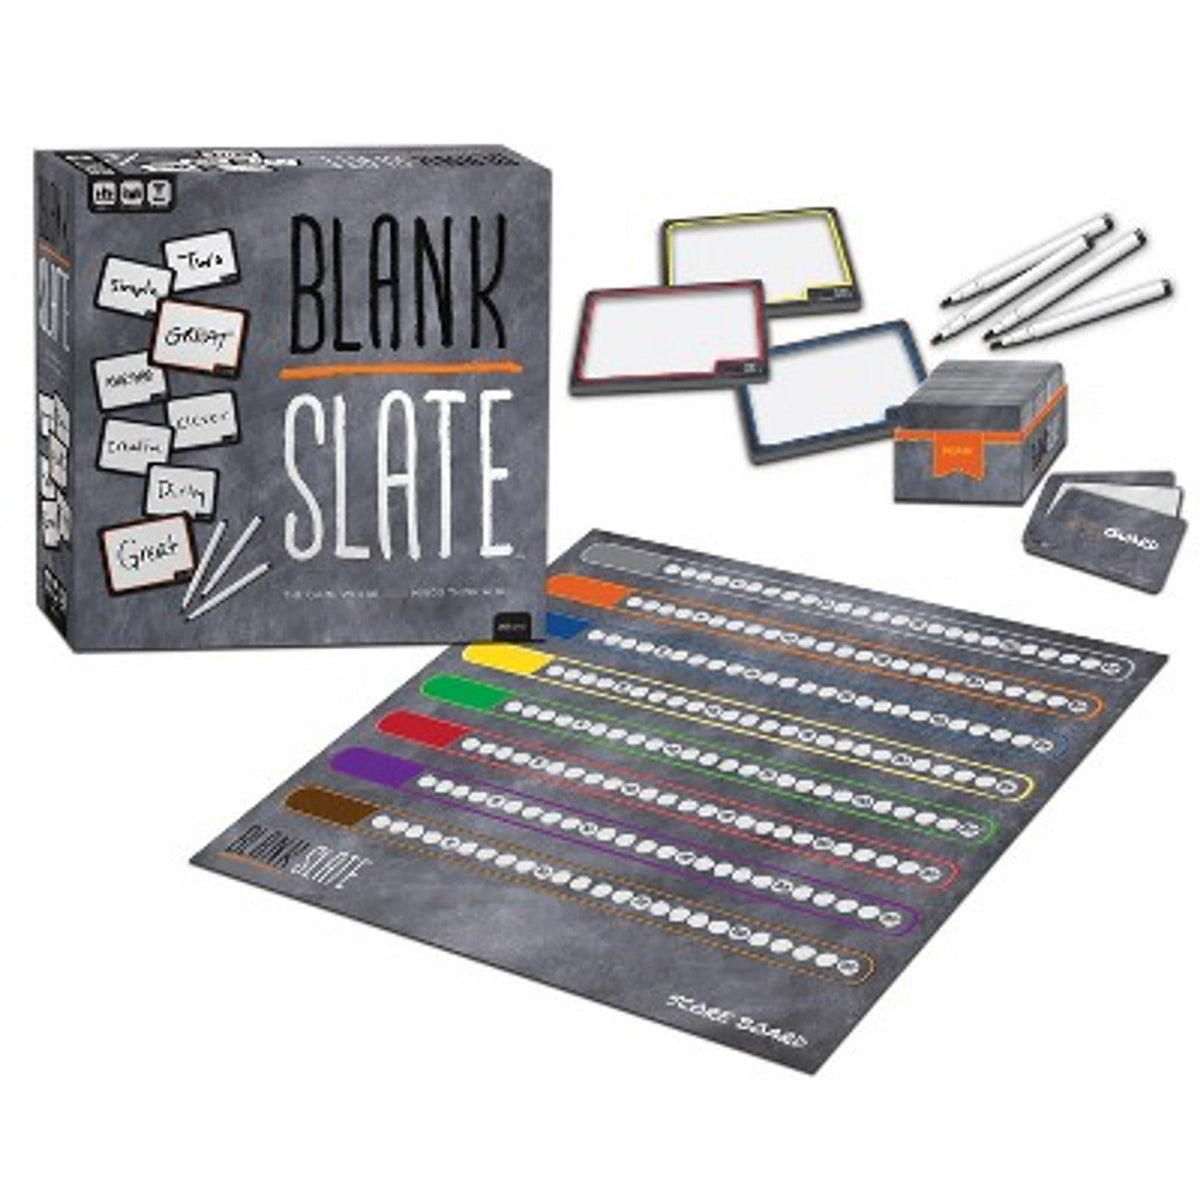 Blank Slate - Third Eye